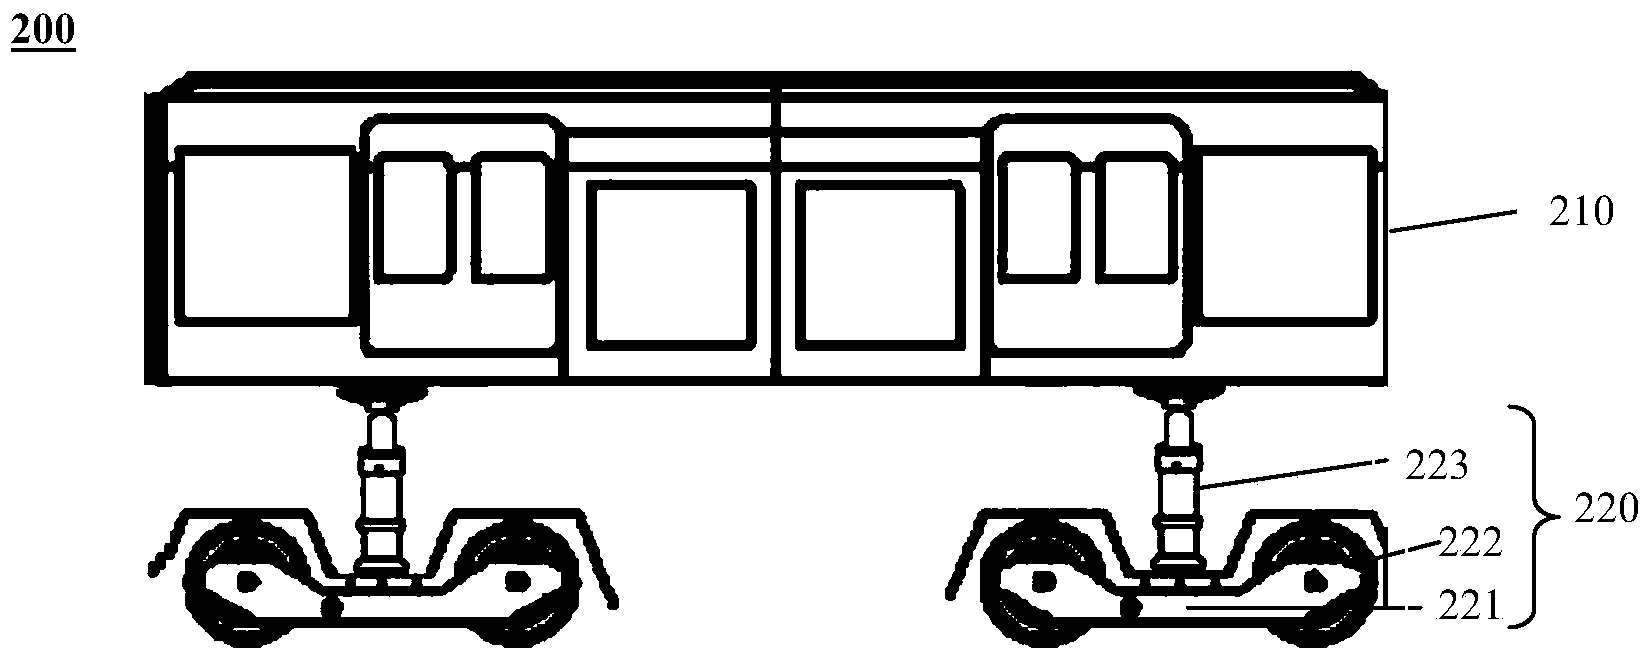 Railway vehicle and train